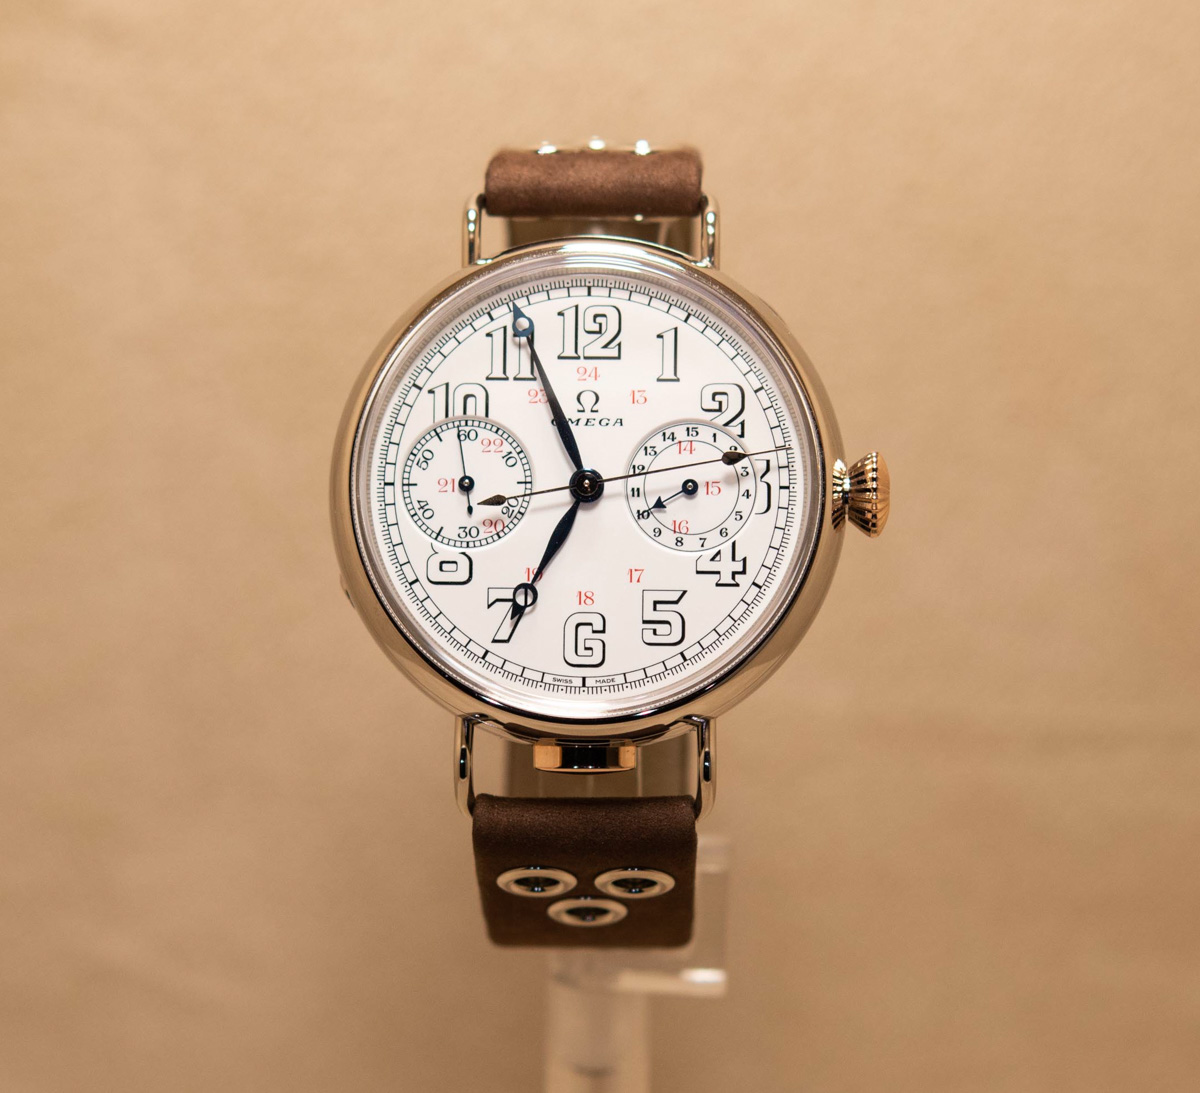 搭置 1913 年製 18”’ CHRO 原型機芯的 First Omega Wrist-Chronograph 腕上評測 